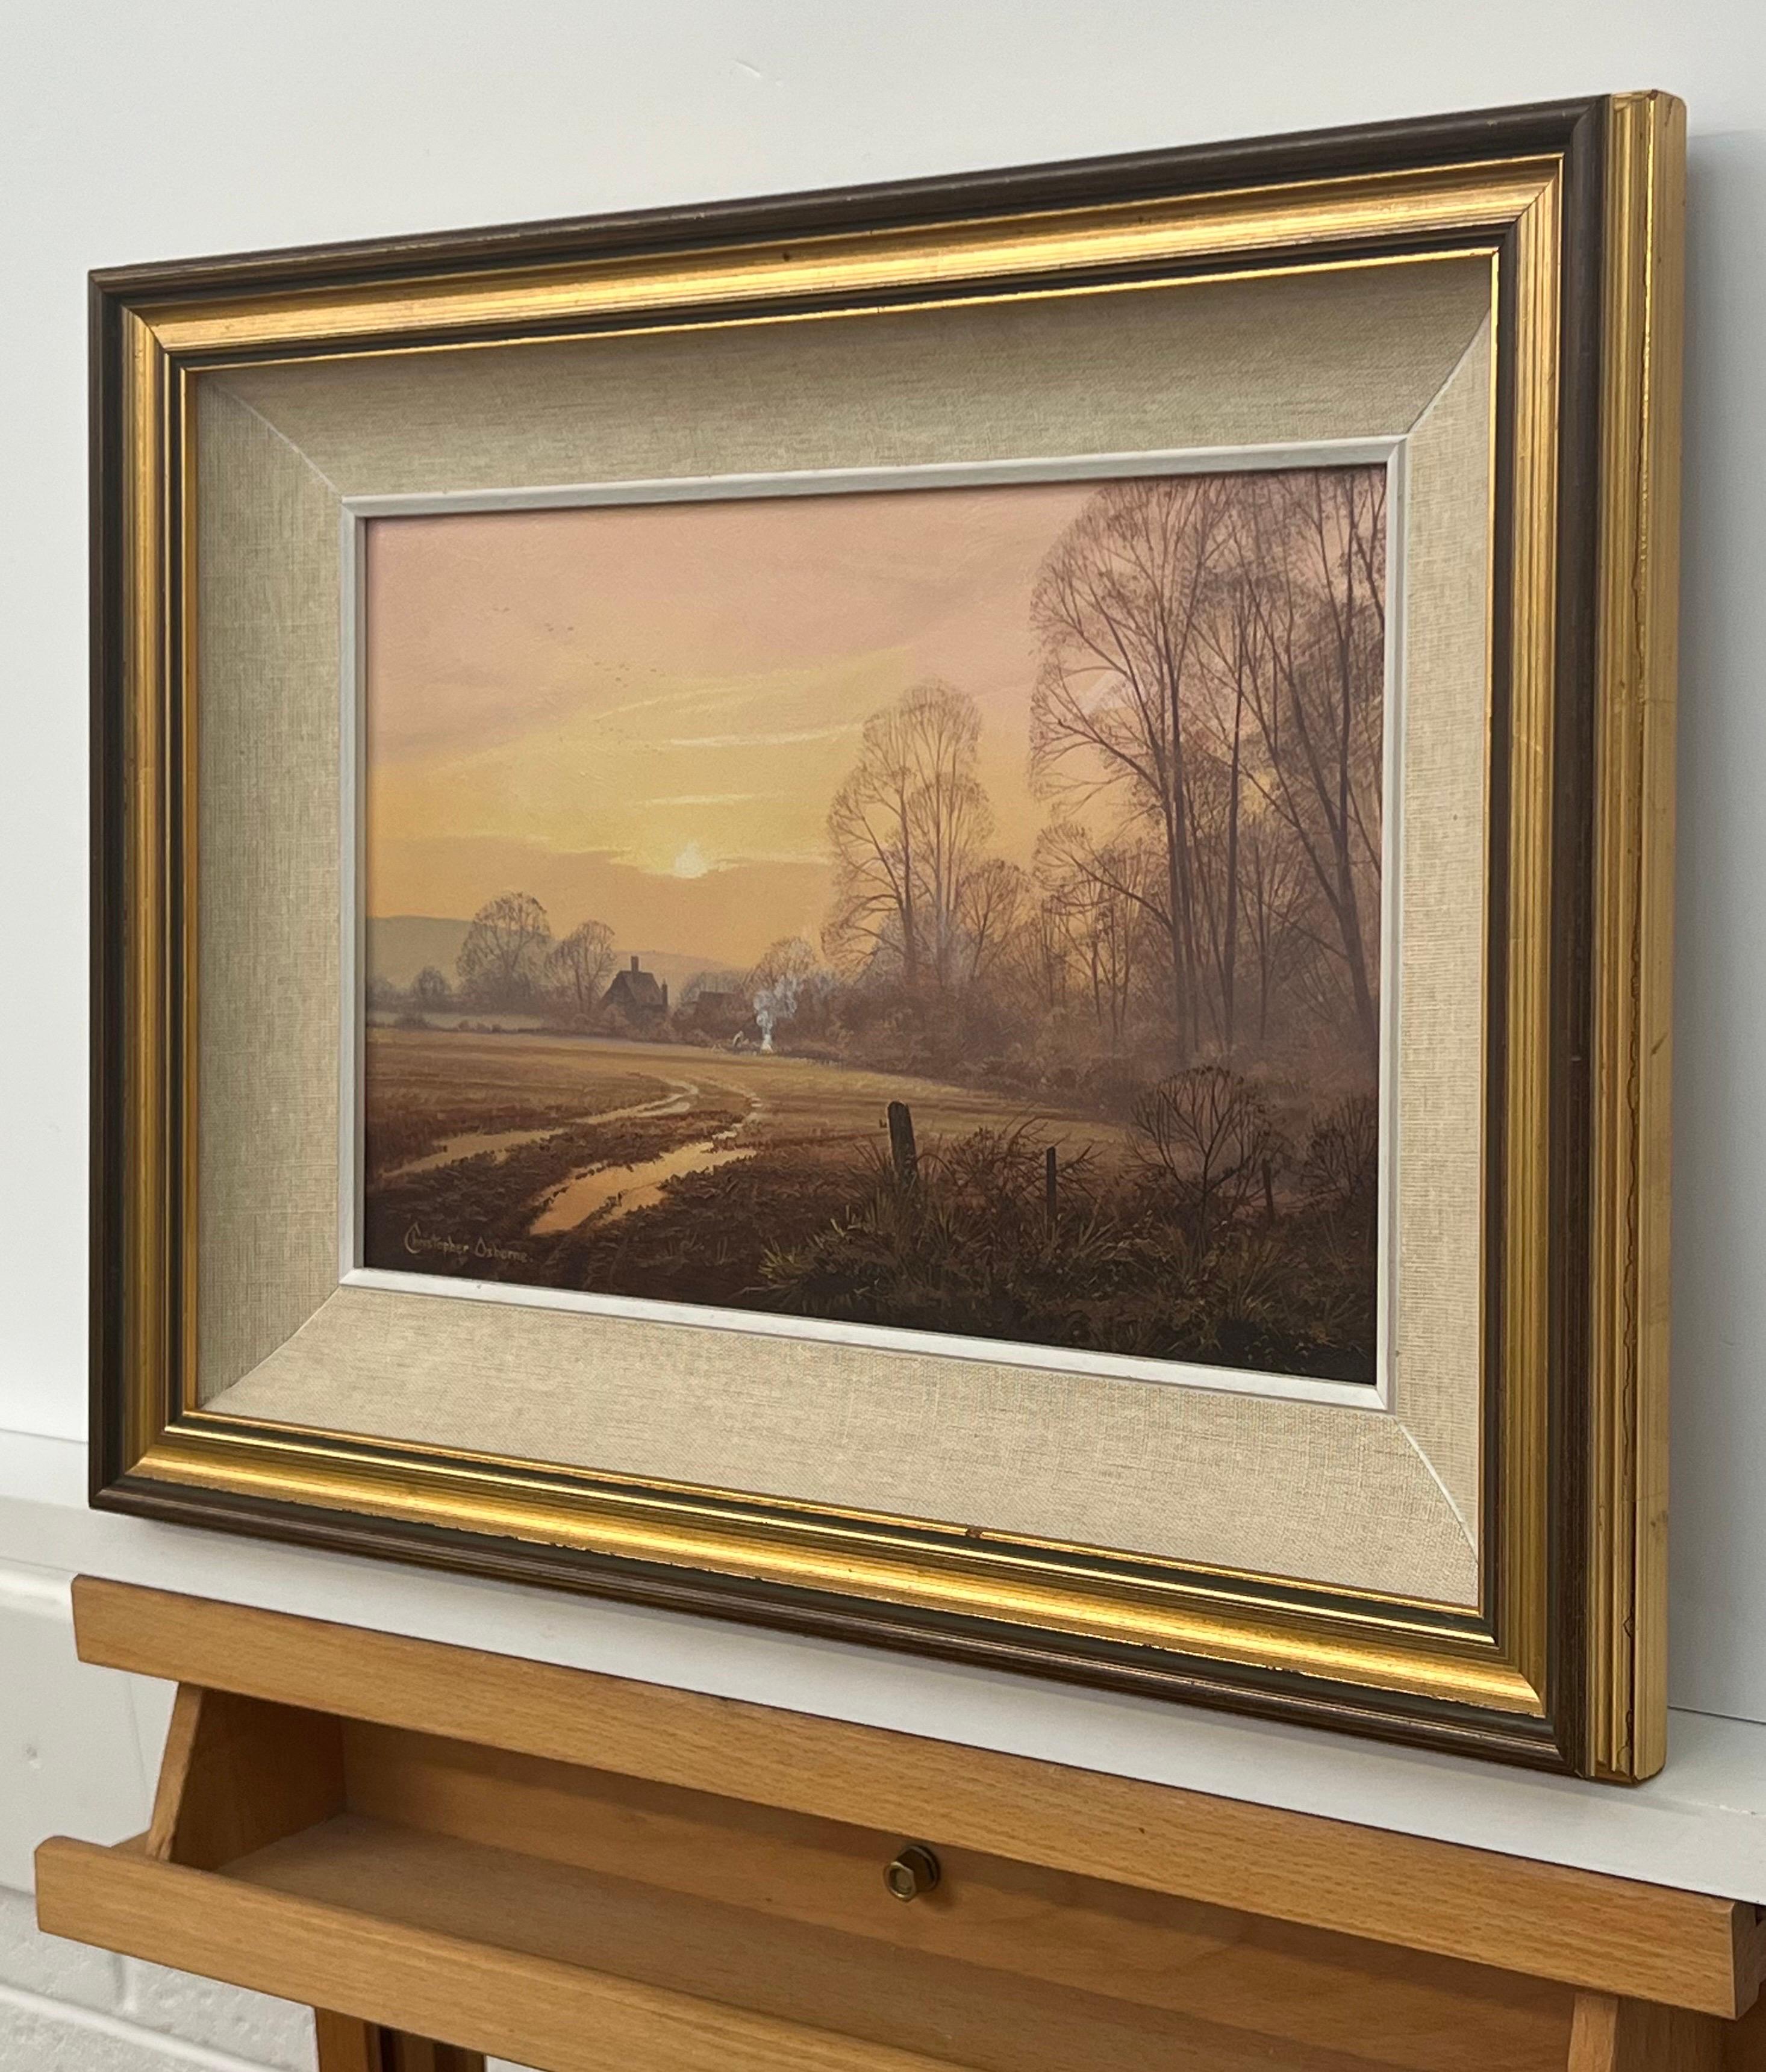 Bauernhof im Wald bei Sonnenuntergang in einer englischen Landschaft mit Winterbäumen und warmen Brauntönen, von dem britischen Künstler Christopher Osborne aus dem 20. 

Kunst misst 12 x 8 Zoll 
Rahmen misst 16 x 12 Zoll 

Signiert, Öl auf Karton,